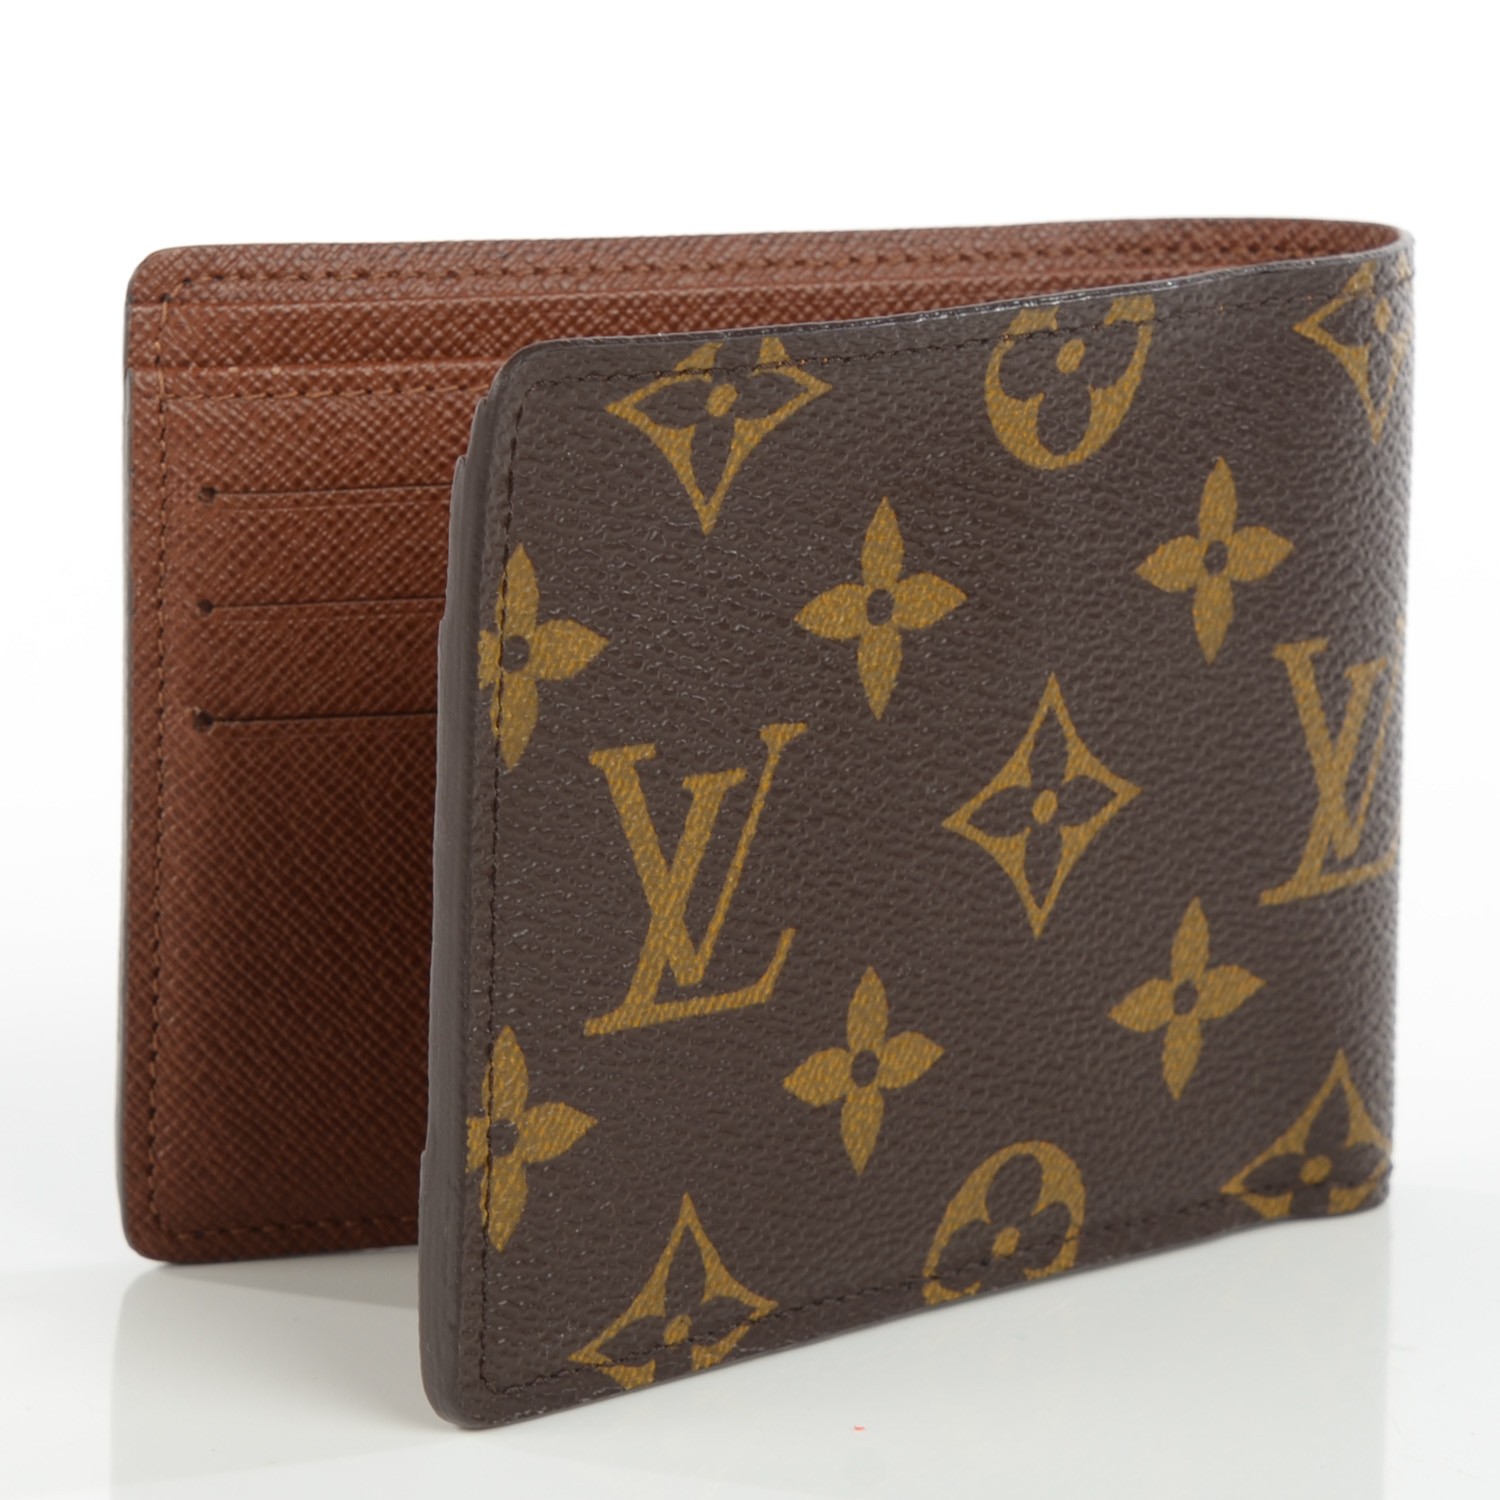 Newest Louis Vuitton Wallets For Men | IQS Executive